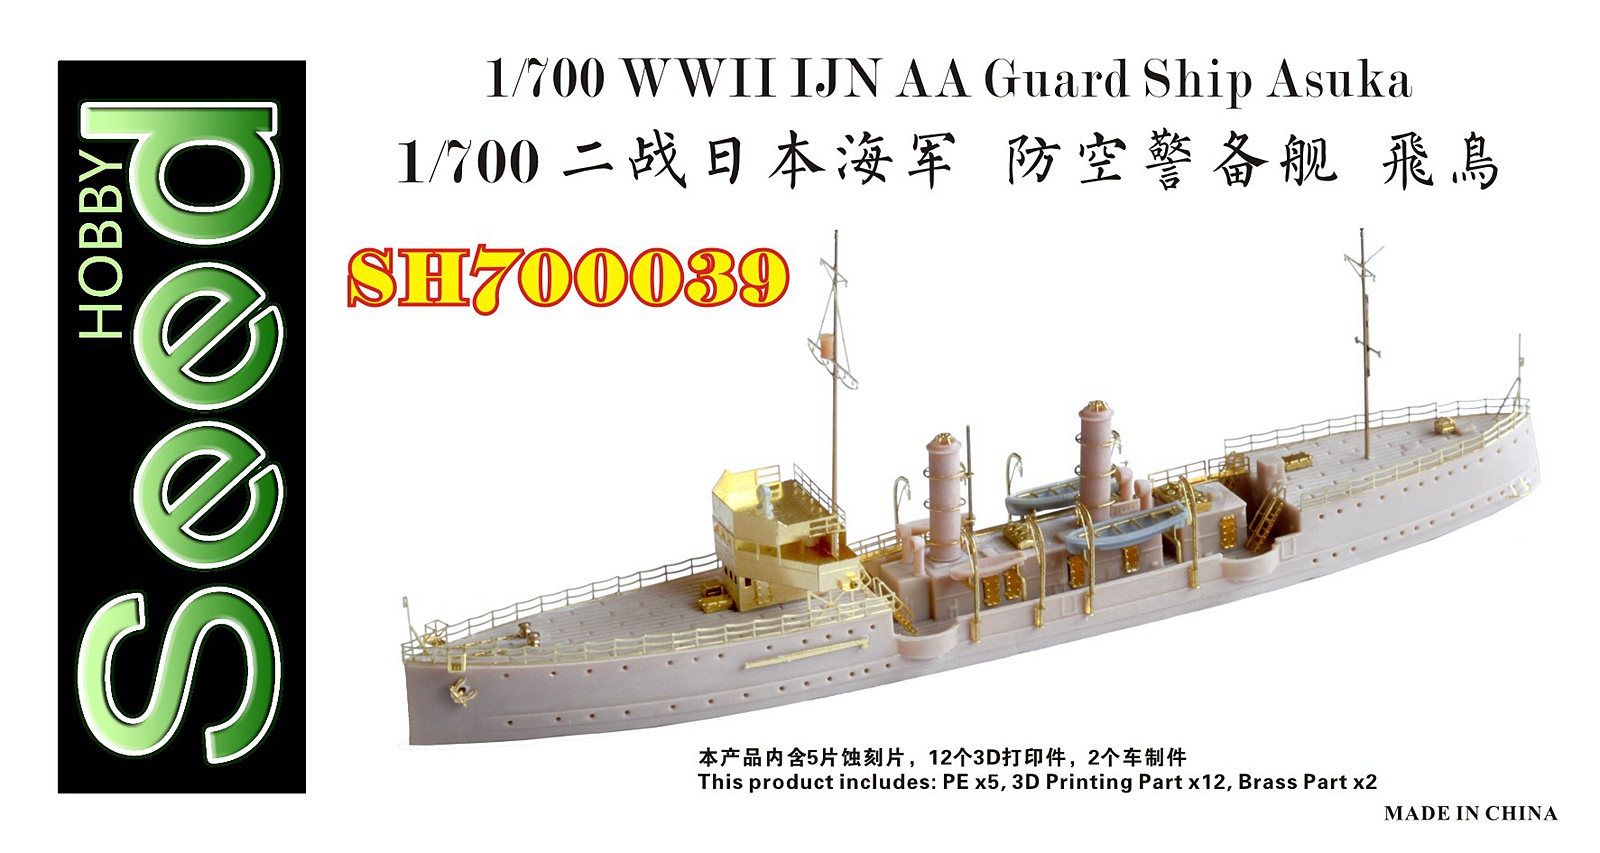 1/700 WWII IJN Anti-Aircraft Guard Ship Asuka Resin Kit - Click Image to Close